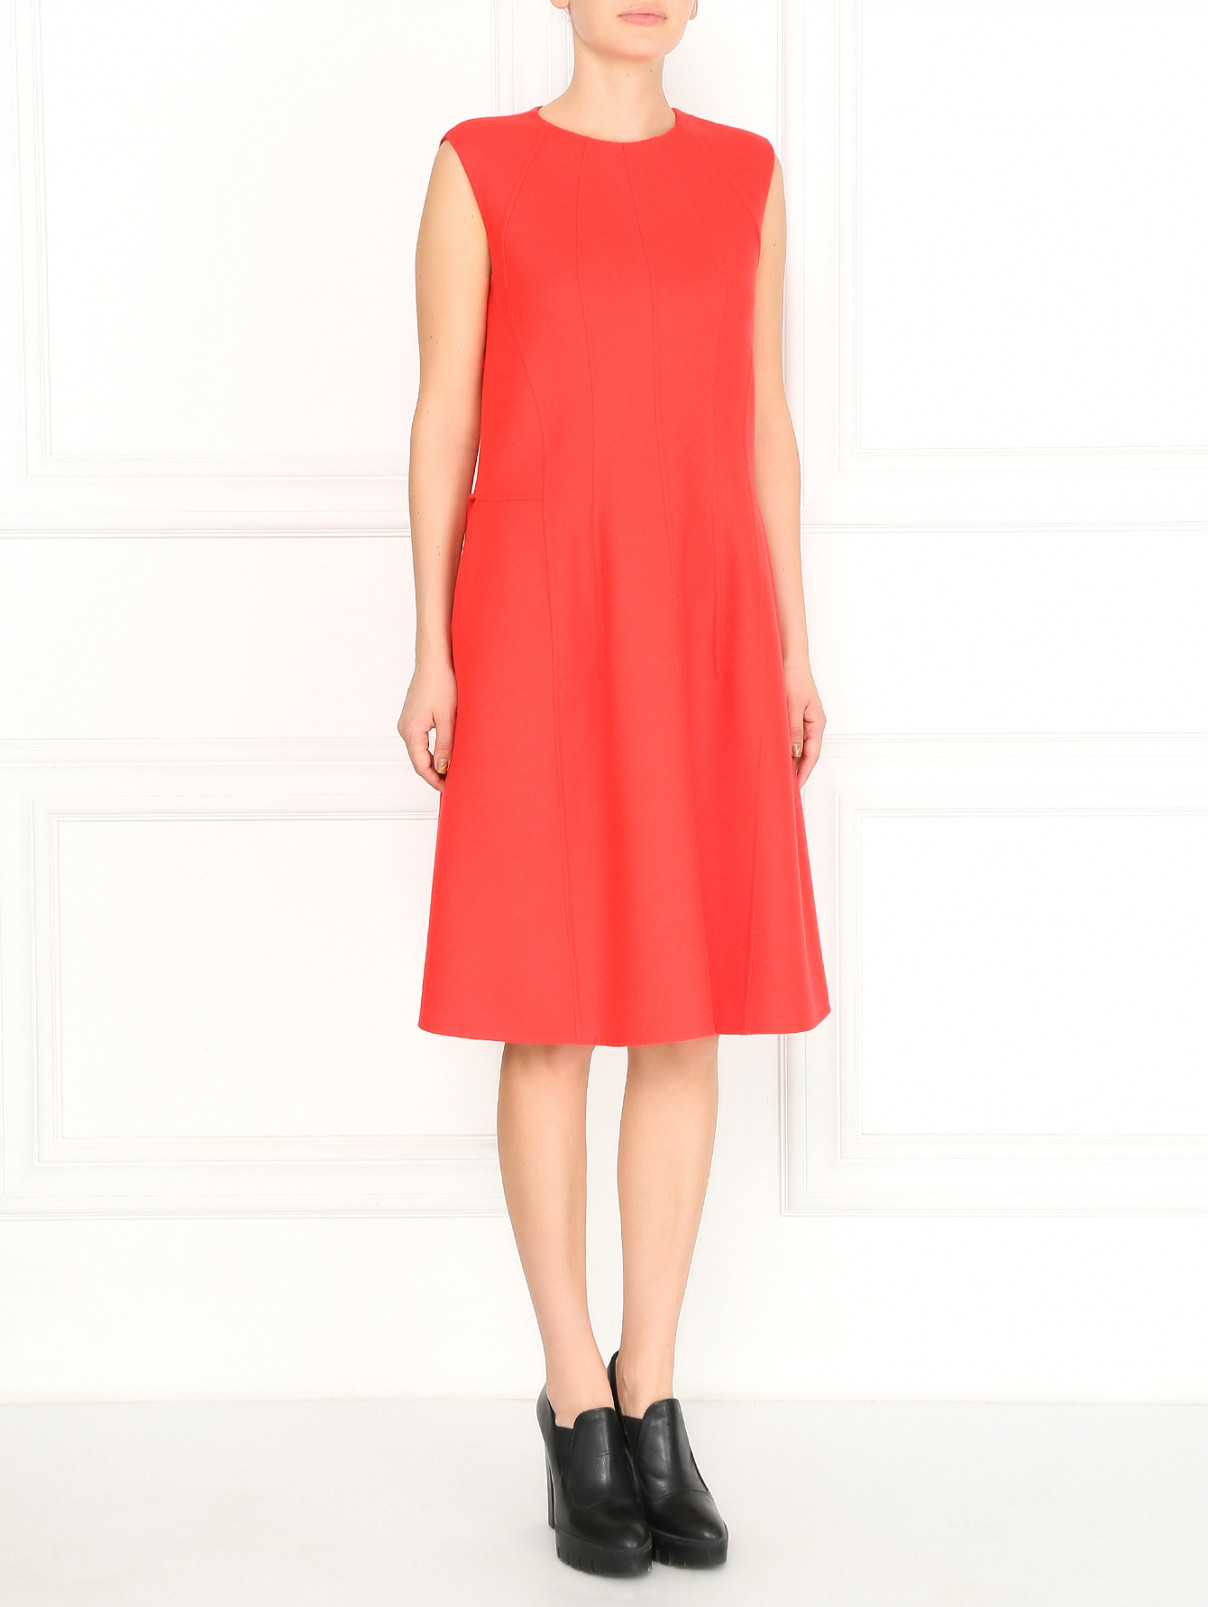 Платье-футляр из шерсти Jil Sander  –  Модель Общий вид  – Цвет:  Красный